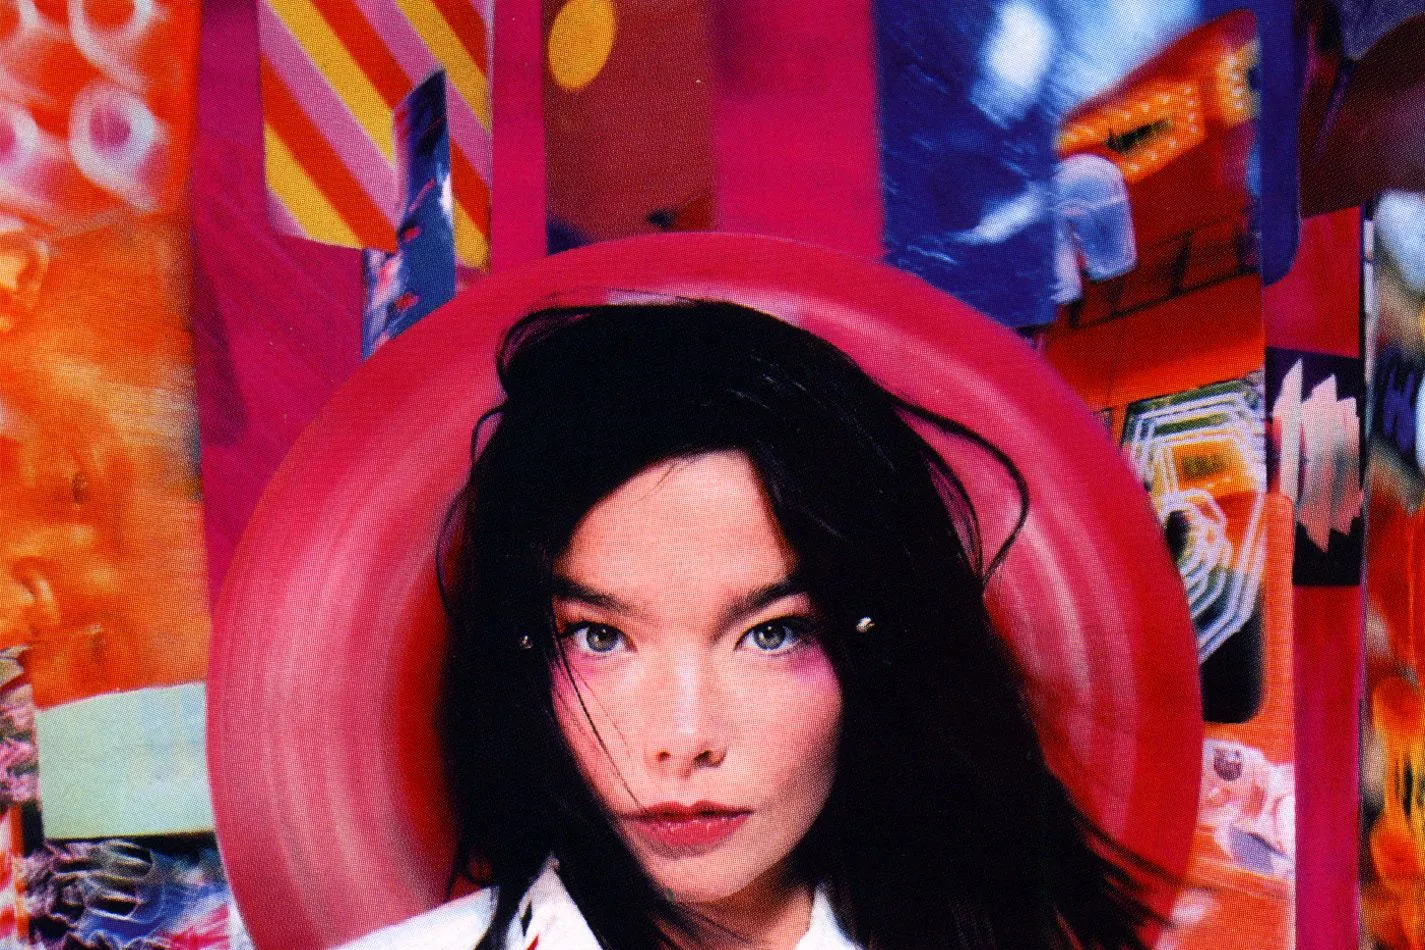 冰岛创作歌手Björk(比约克)1993-2022发行专辑、单曲、现场辑合集[无损FLAC/11.9GB]百度云盘打包下载 影音资源 第3张